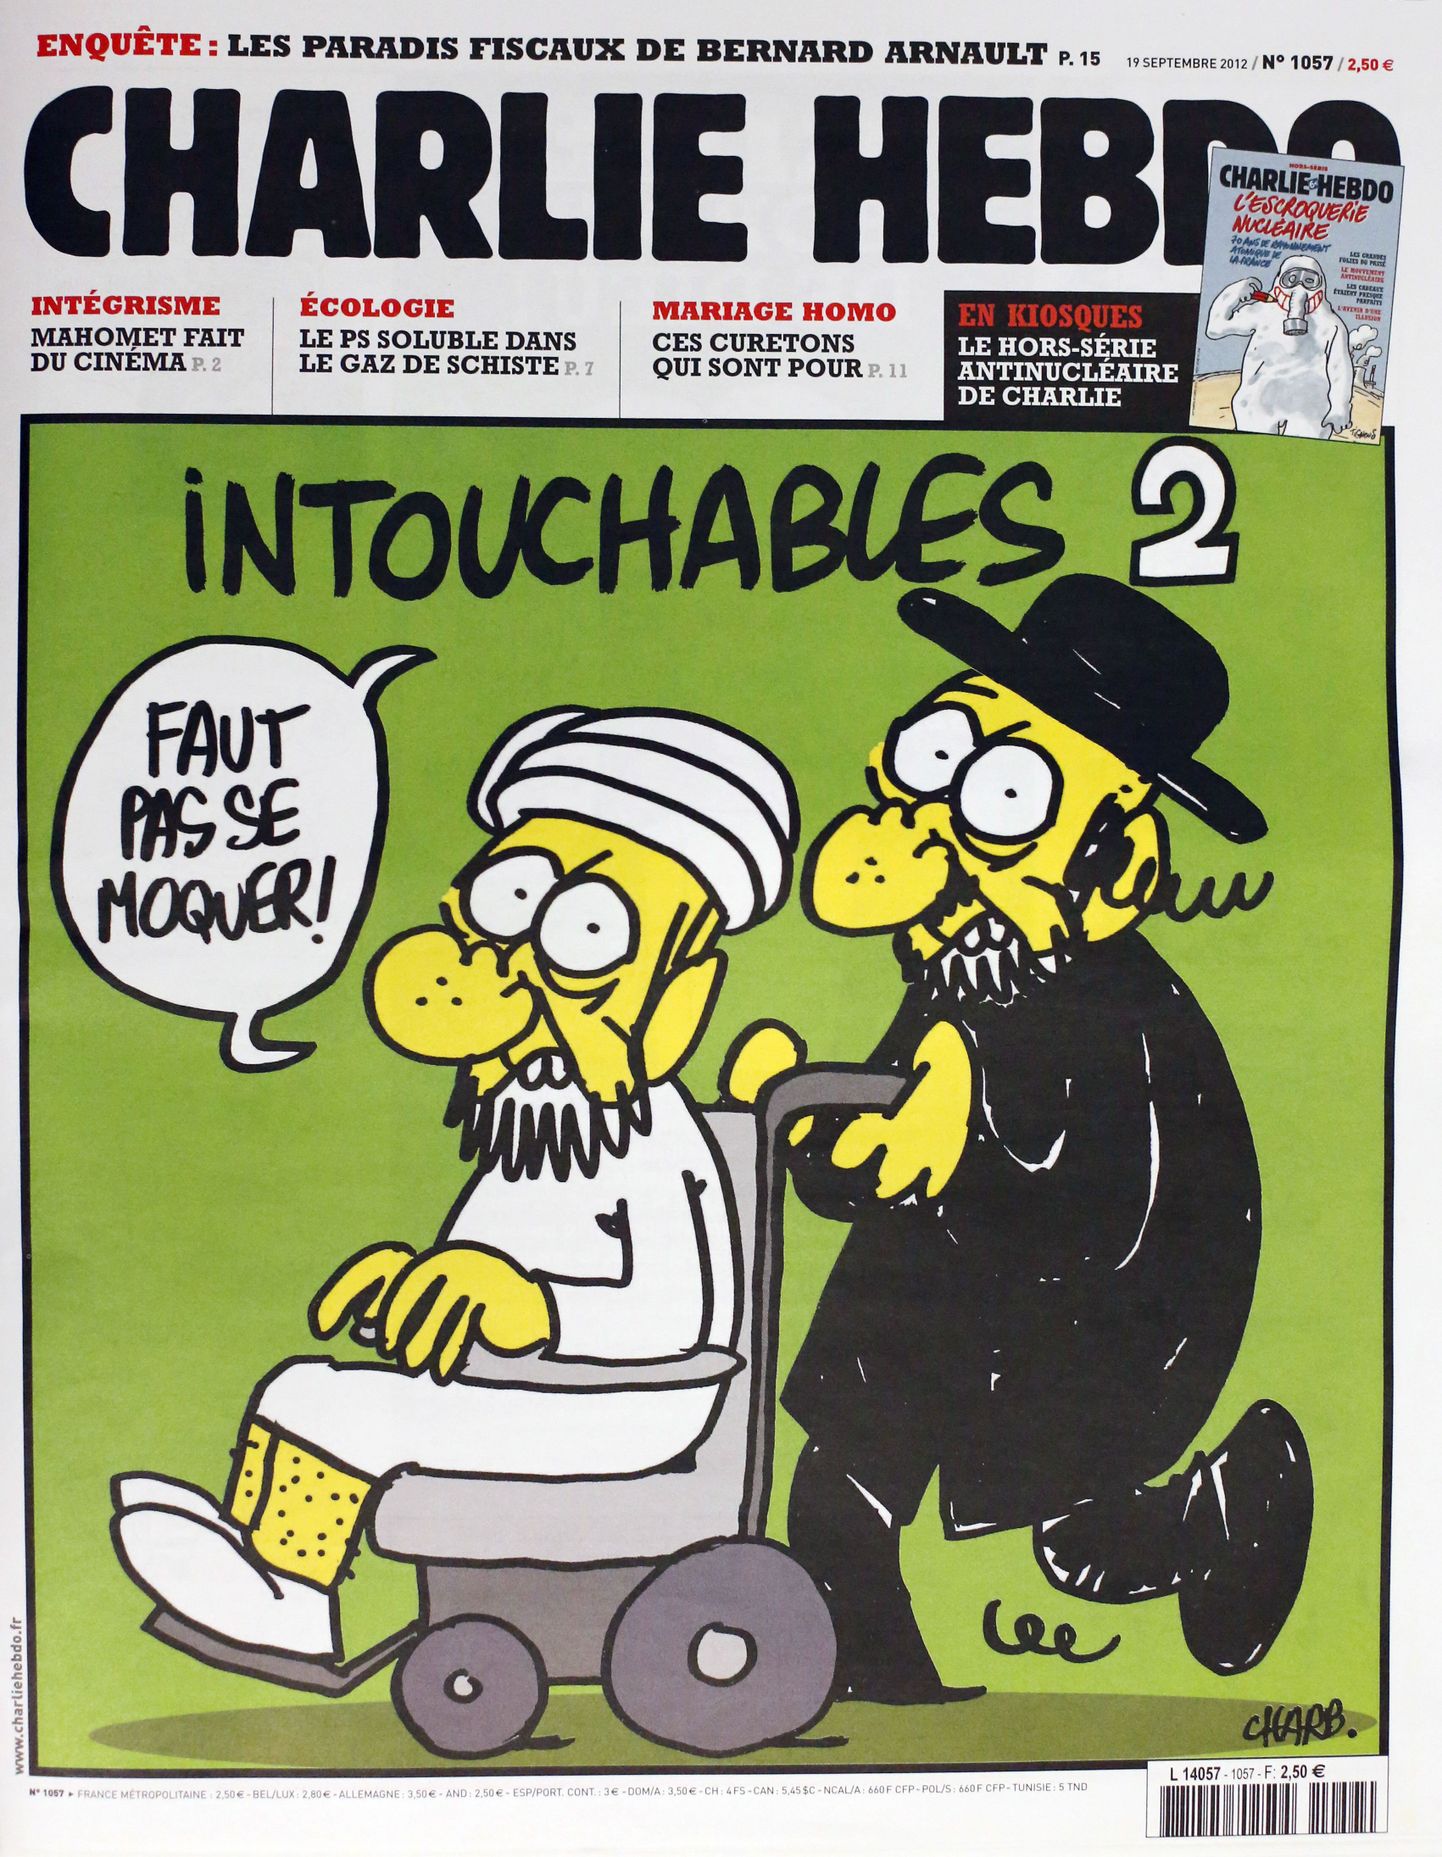 Pildil eelmise aasta sügisel Prantsuse nädalalehe Charlie Hebdo esikaanel ilmunud karikatuur prohvet Muhamedist.